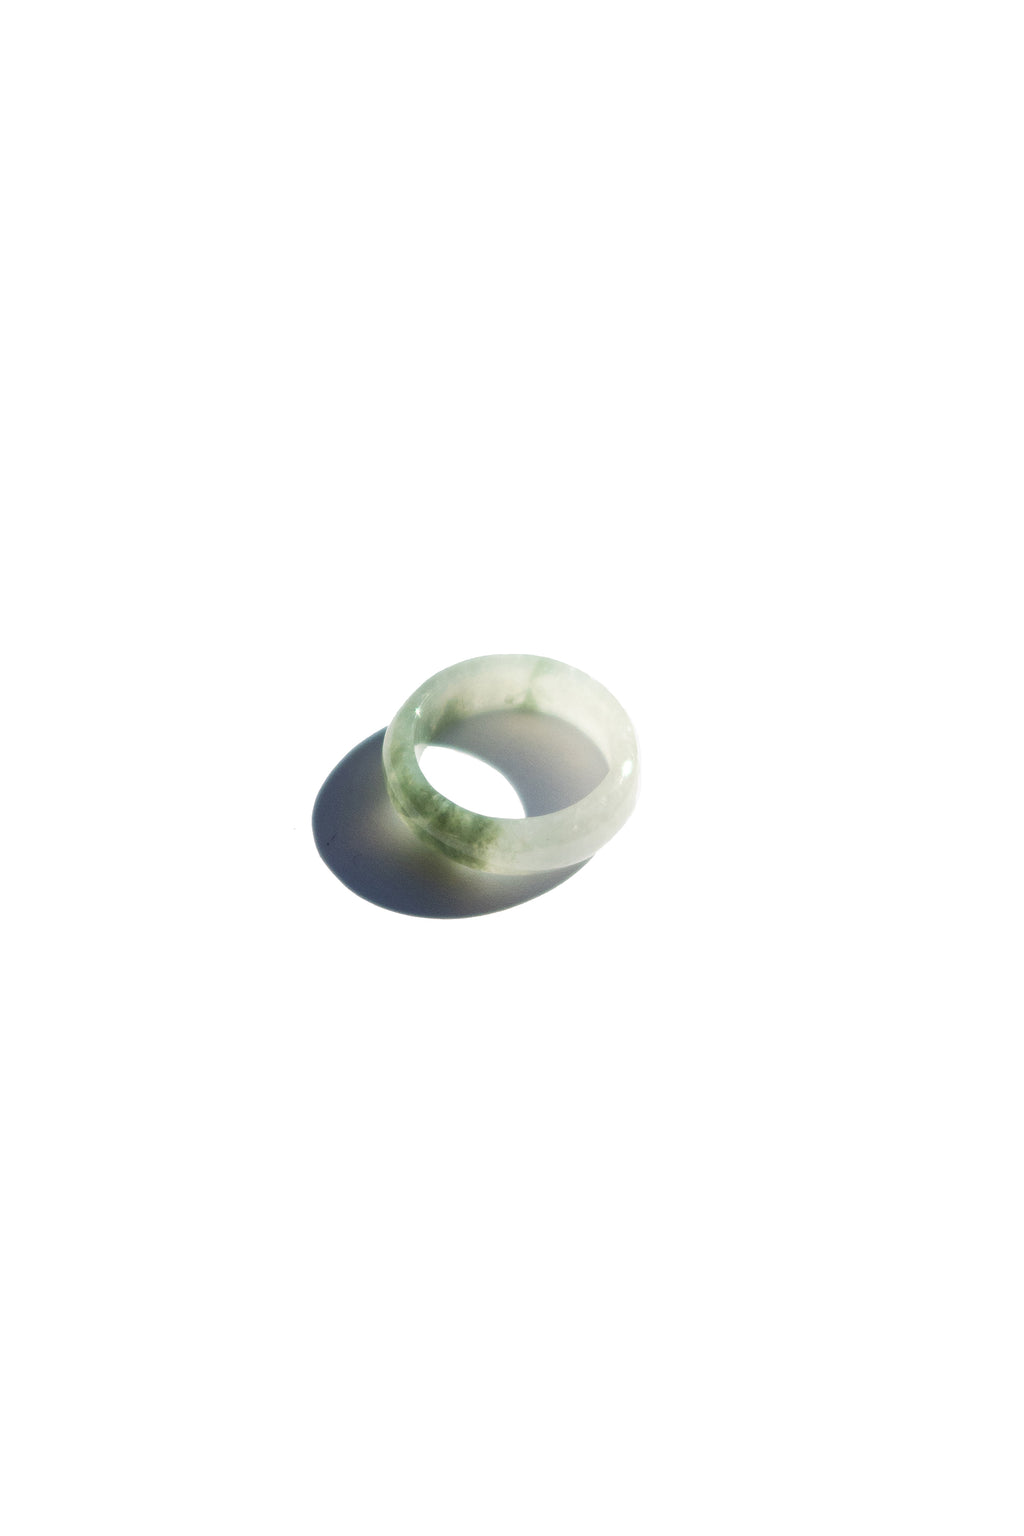 seree-Koi-Mottled-green-jade-ring